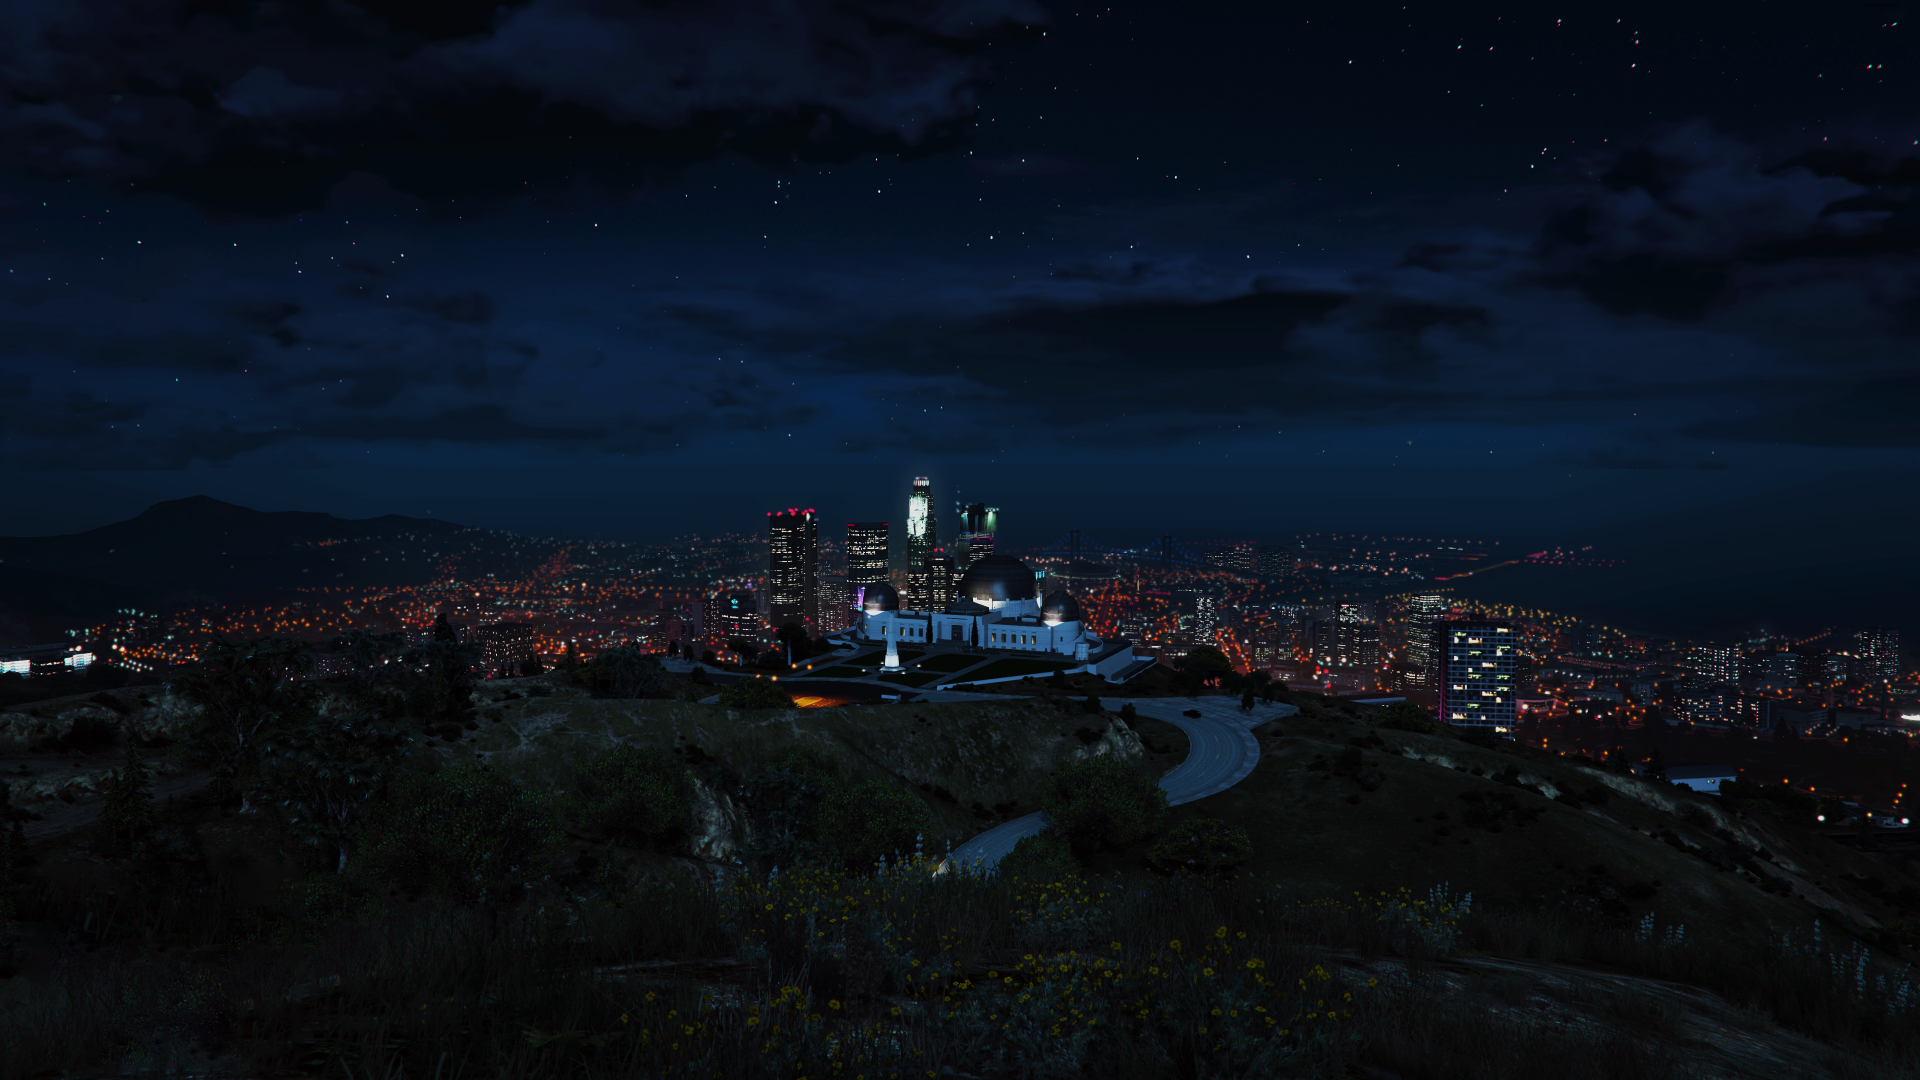 GTA V ( Grand Theft Auto V) Full City View 4k